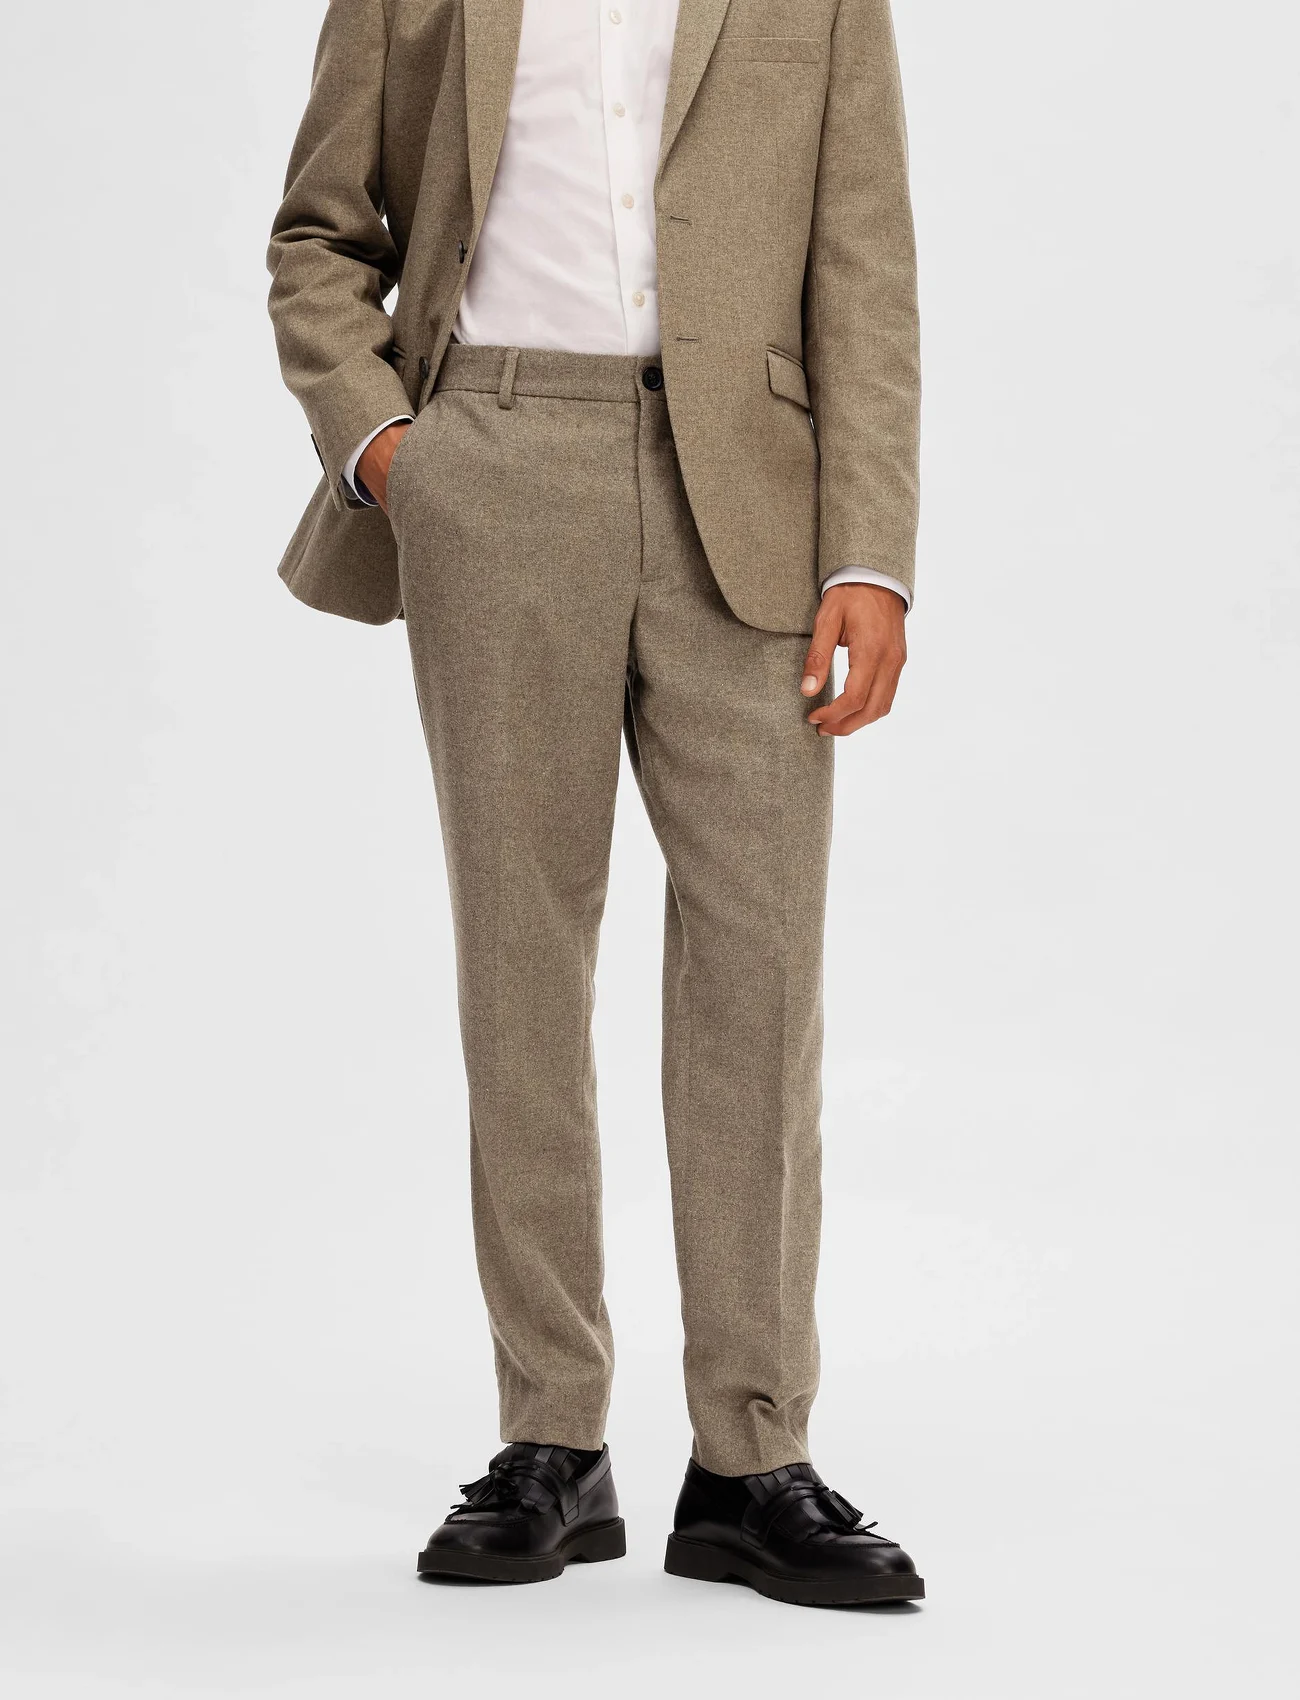 Selected Homme - SLHSLIM-MARK WOOL TRS B NOOS - formal trousers - light brown melange - 1